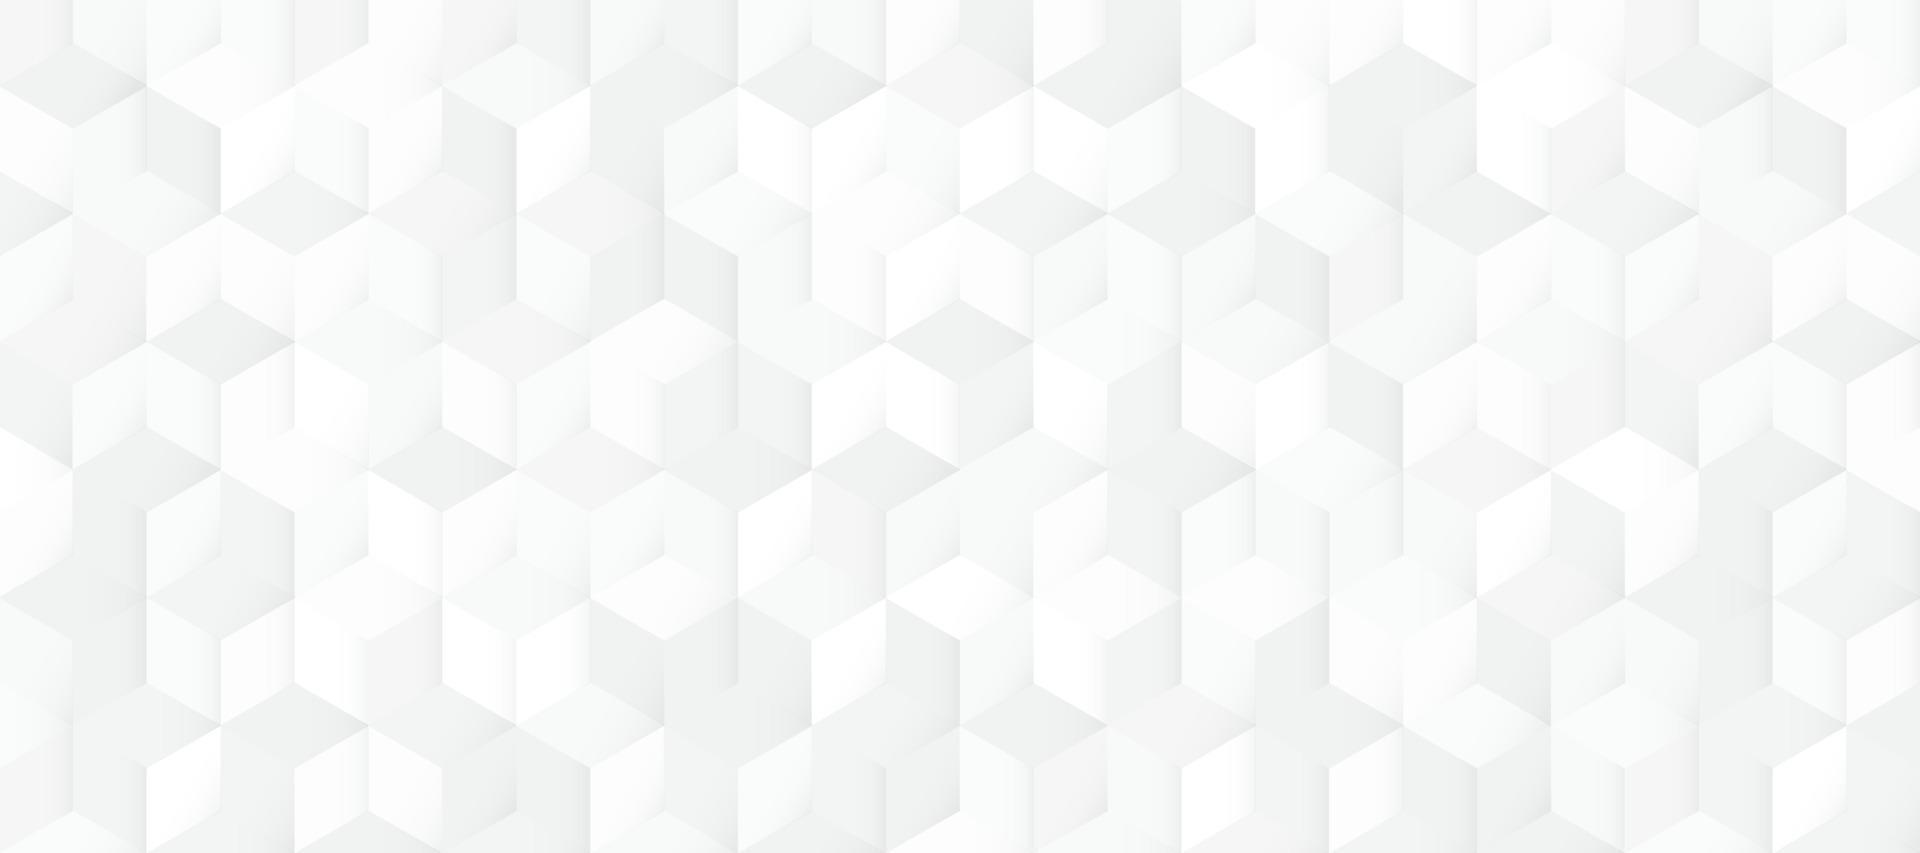 Fondo de patrón 3d cuadrado blanco y gris transparente abstracto. diseño de textura geométrica moderna. ilustración vectorial vector